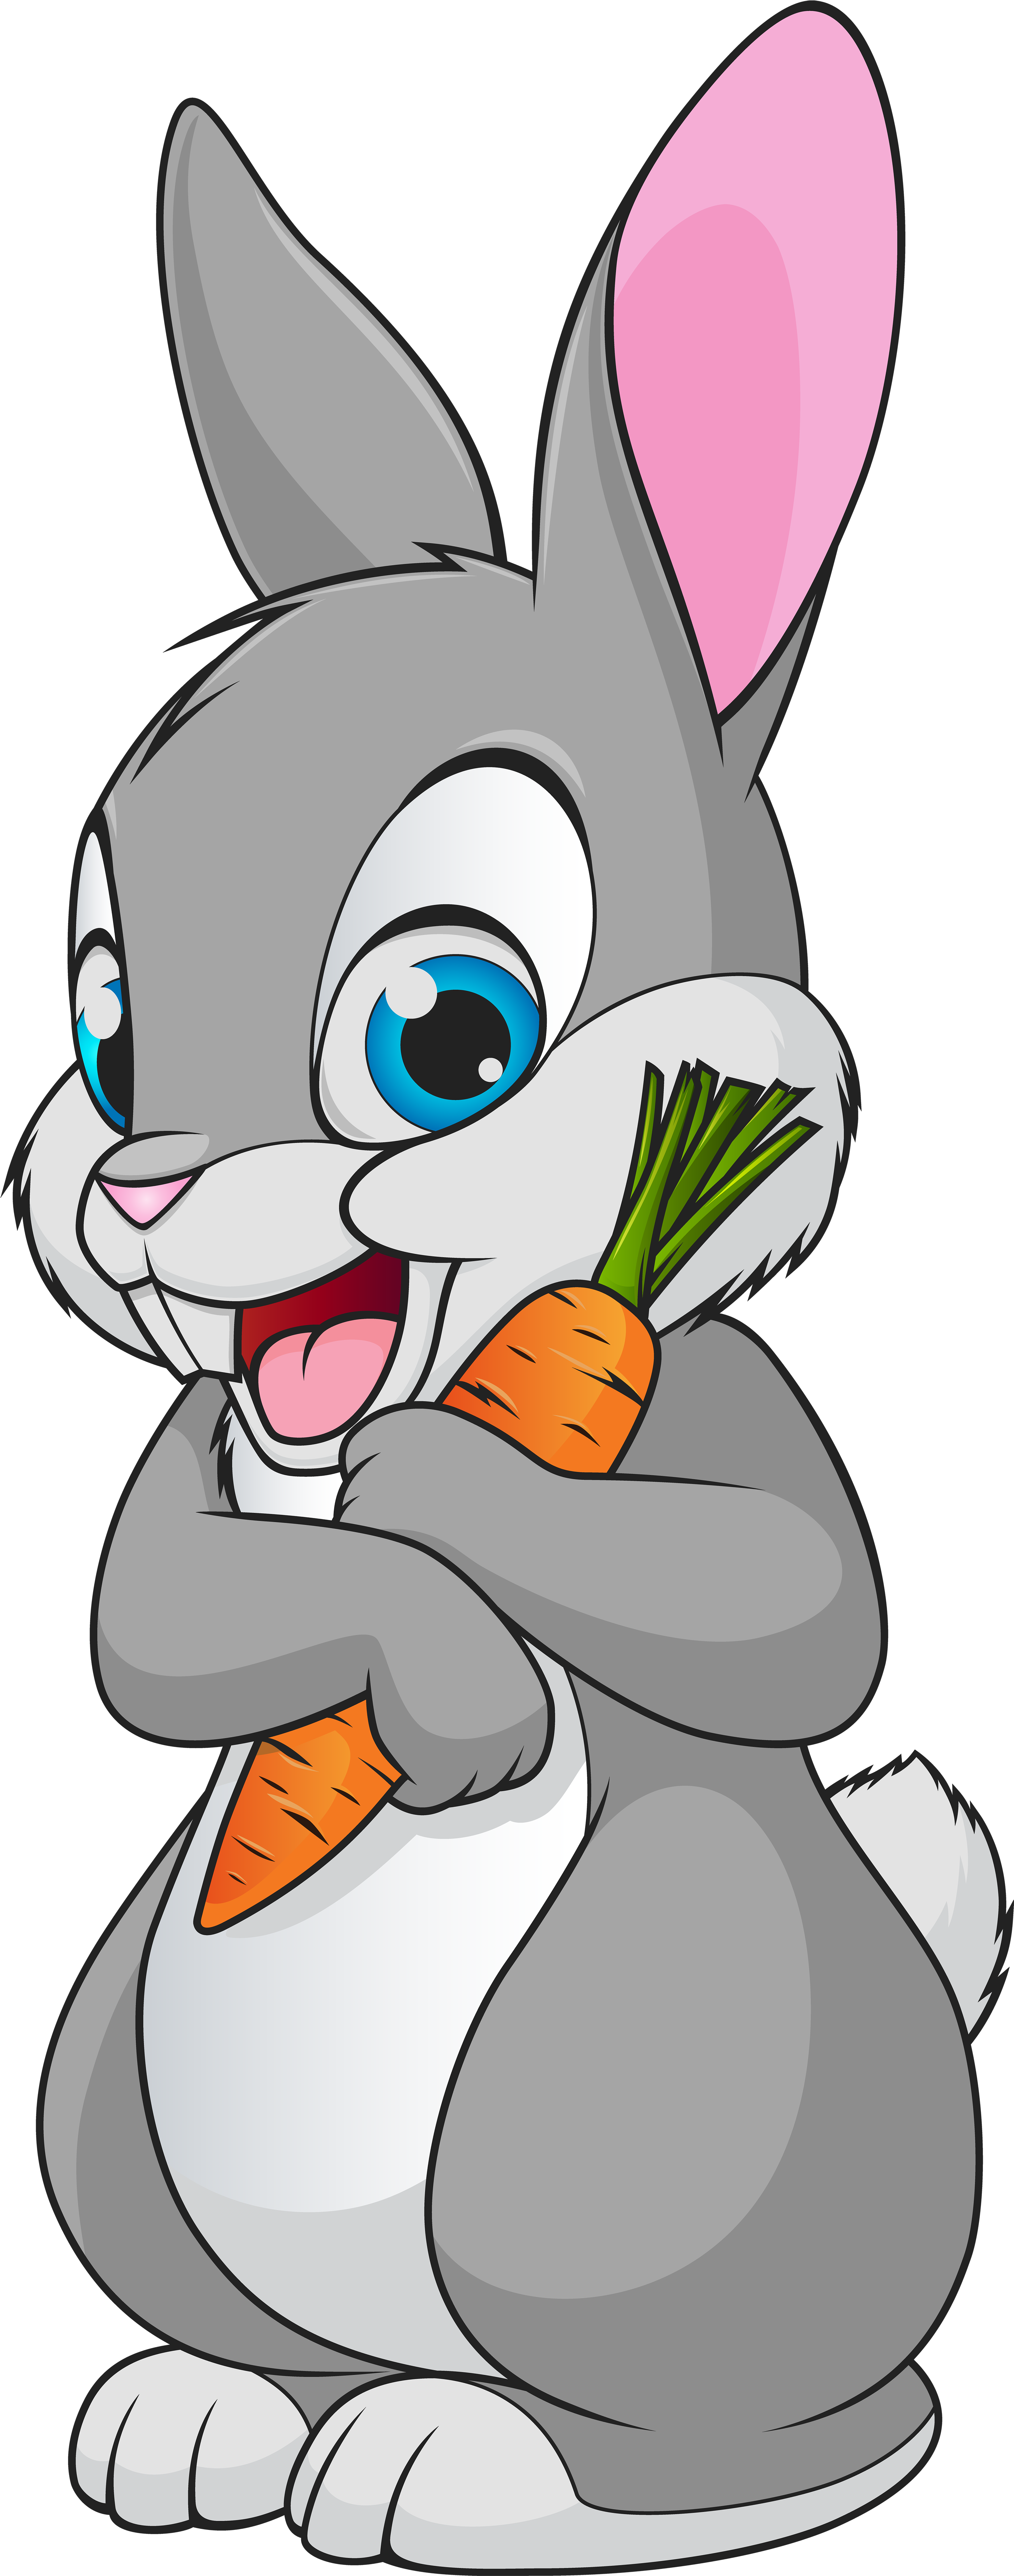 3259 X 8000 54 - Bunny Rabbit Cartoon Clipart (3259x8000), Png Download